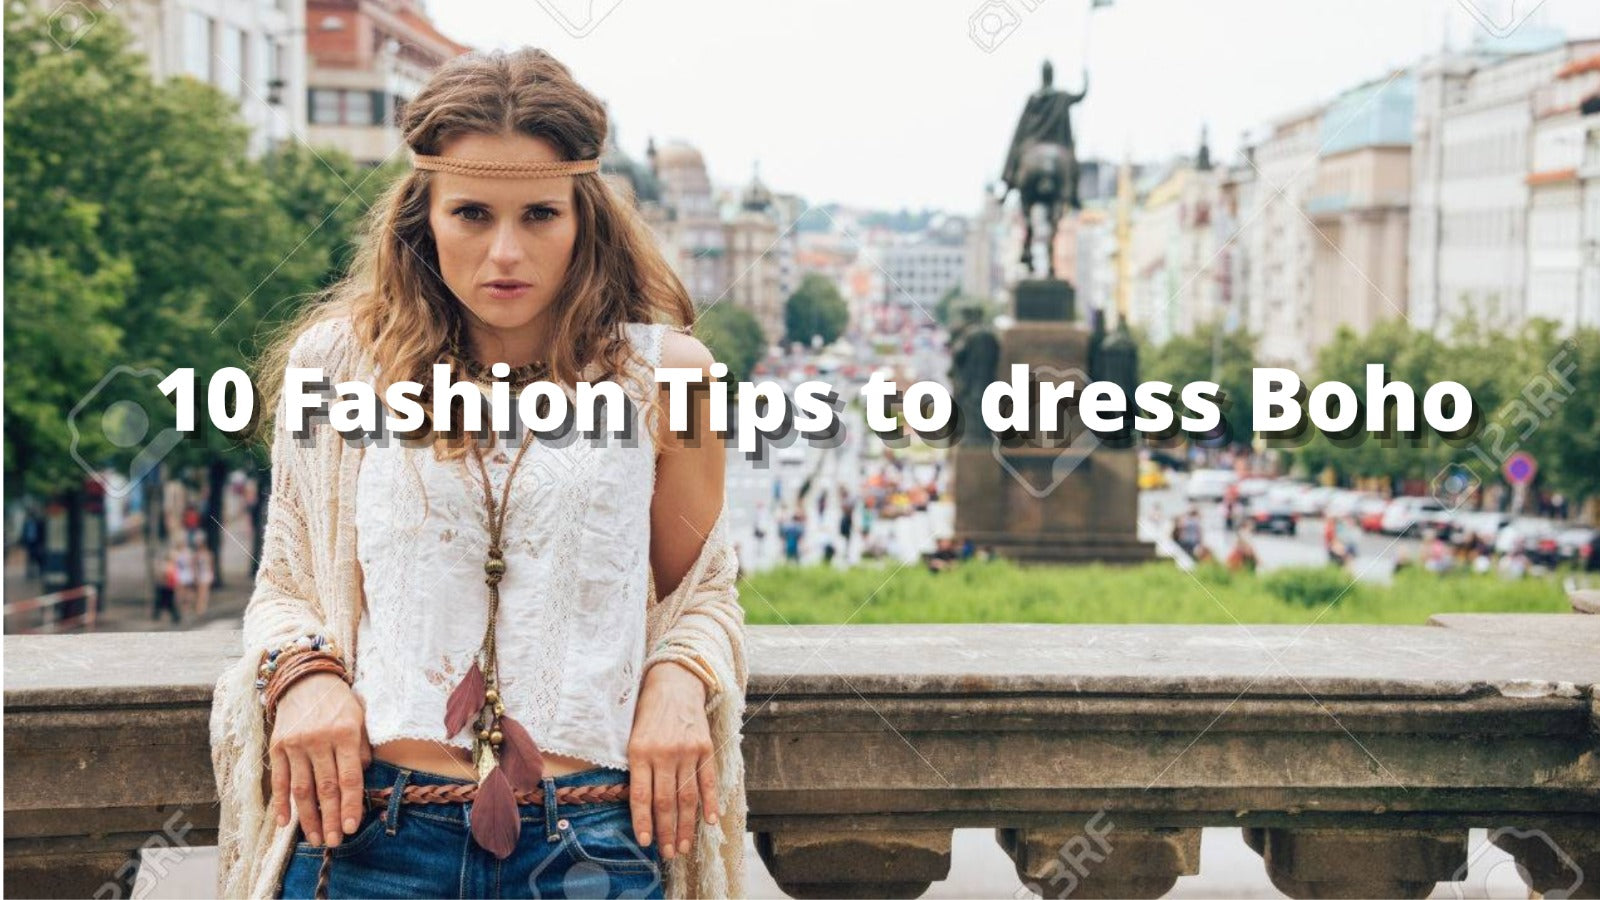 How to dress Boho ? : 10 Fashion Tips